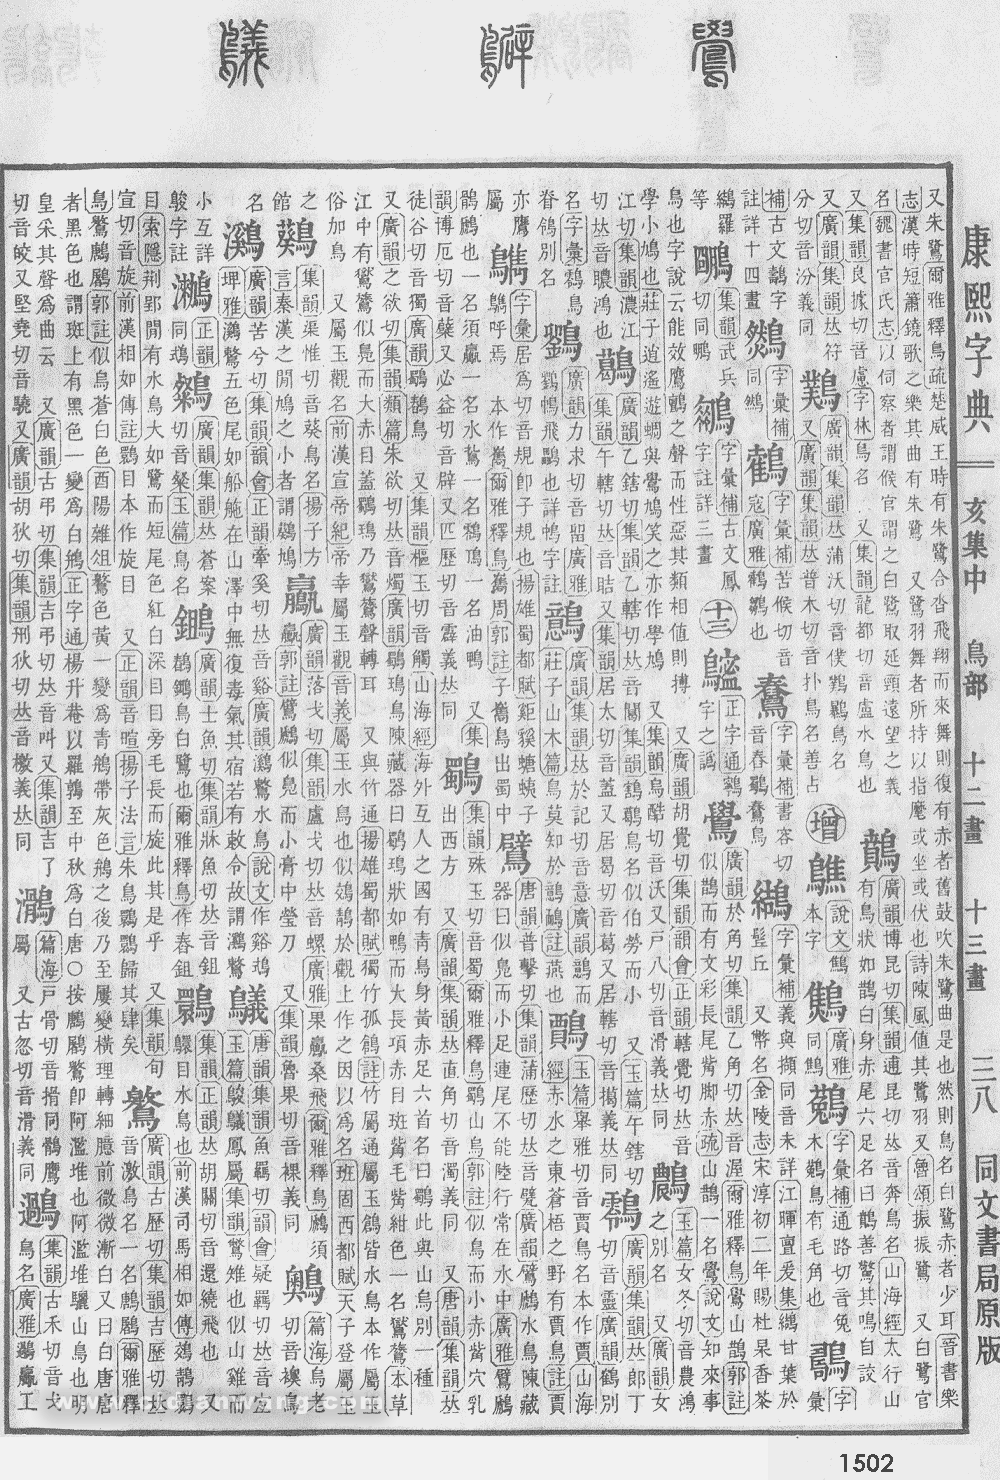 康熙字典掃描版第1502頁